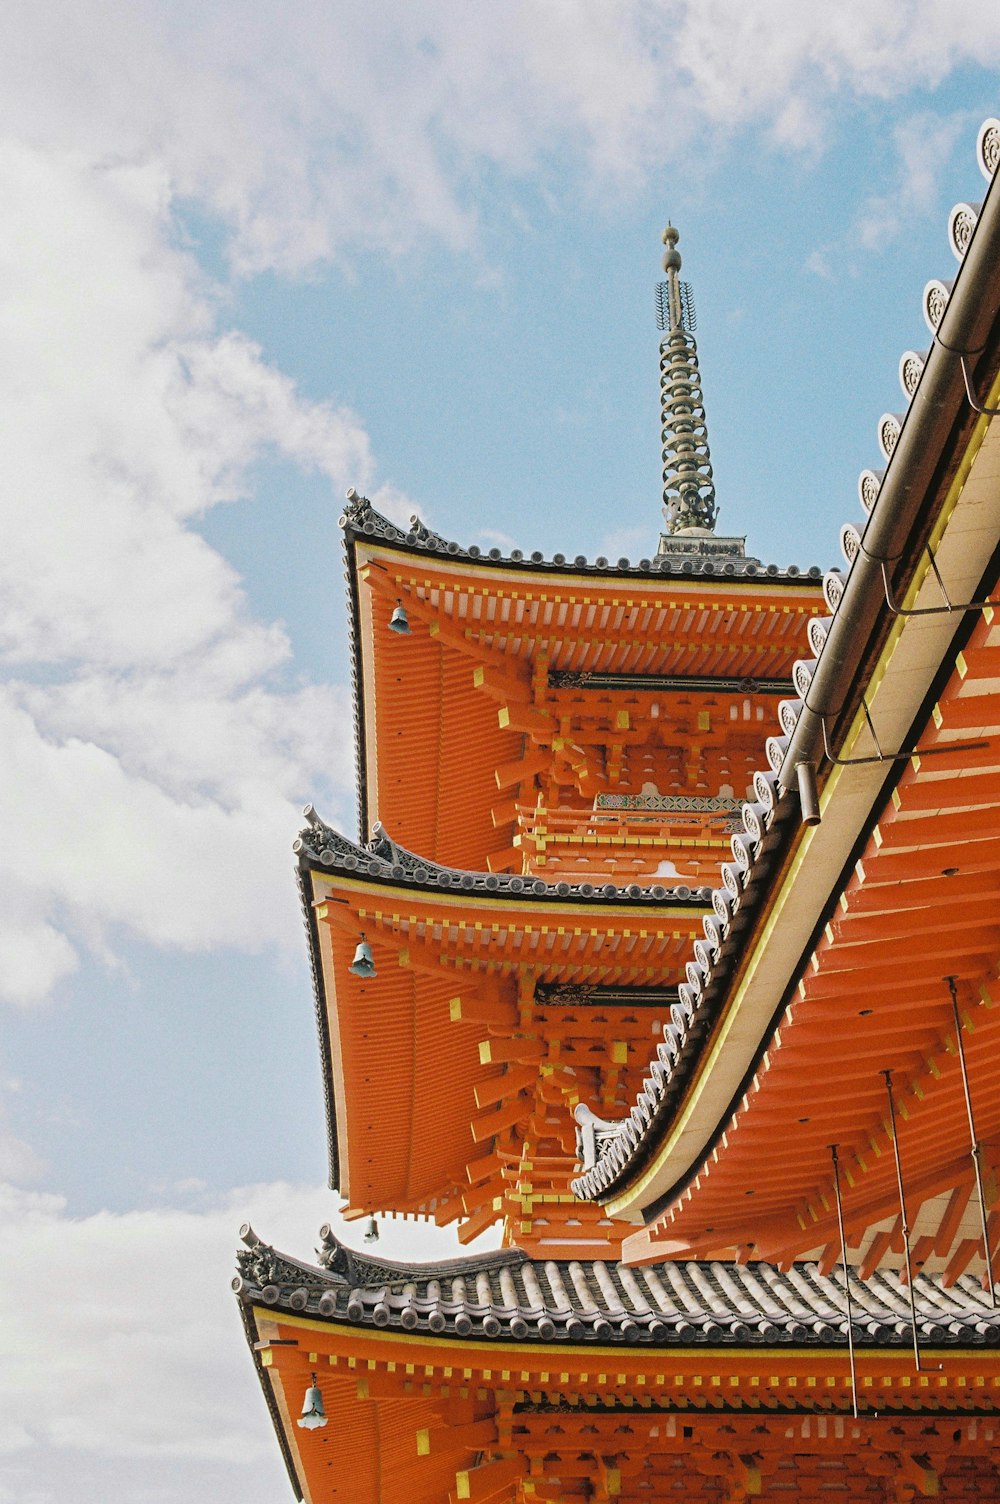 Tempio a pagoda in legno arancione e grigio